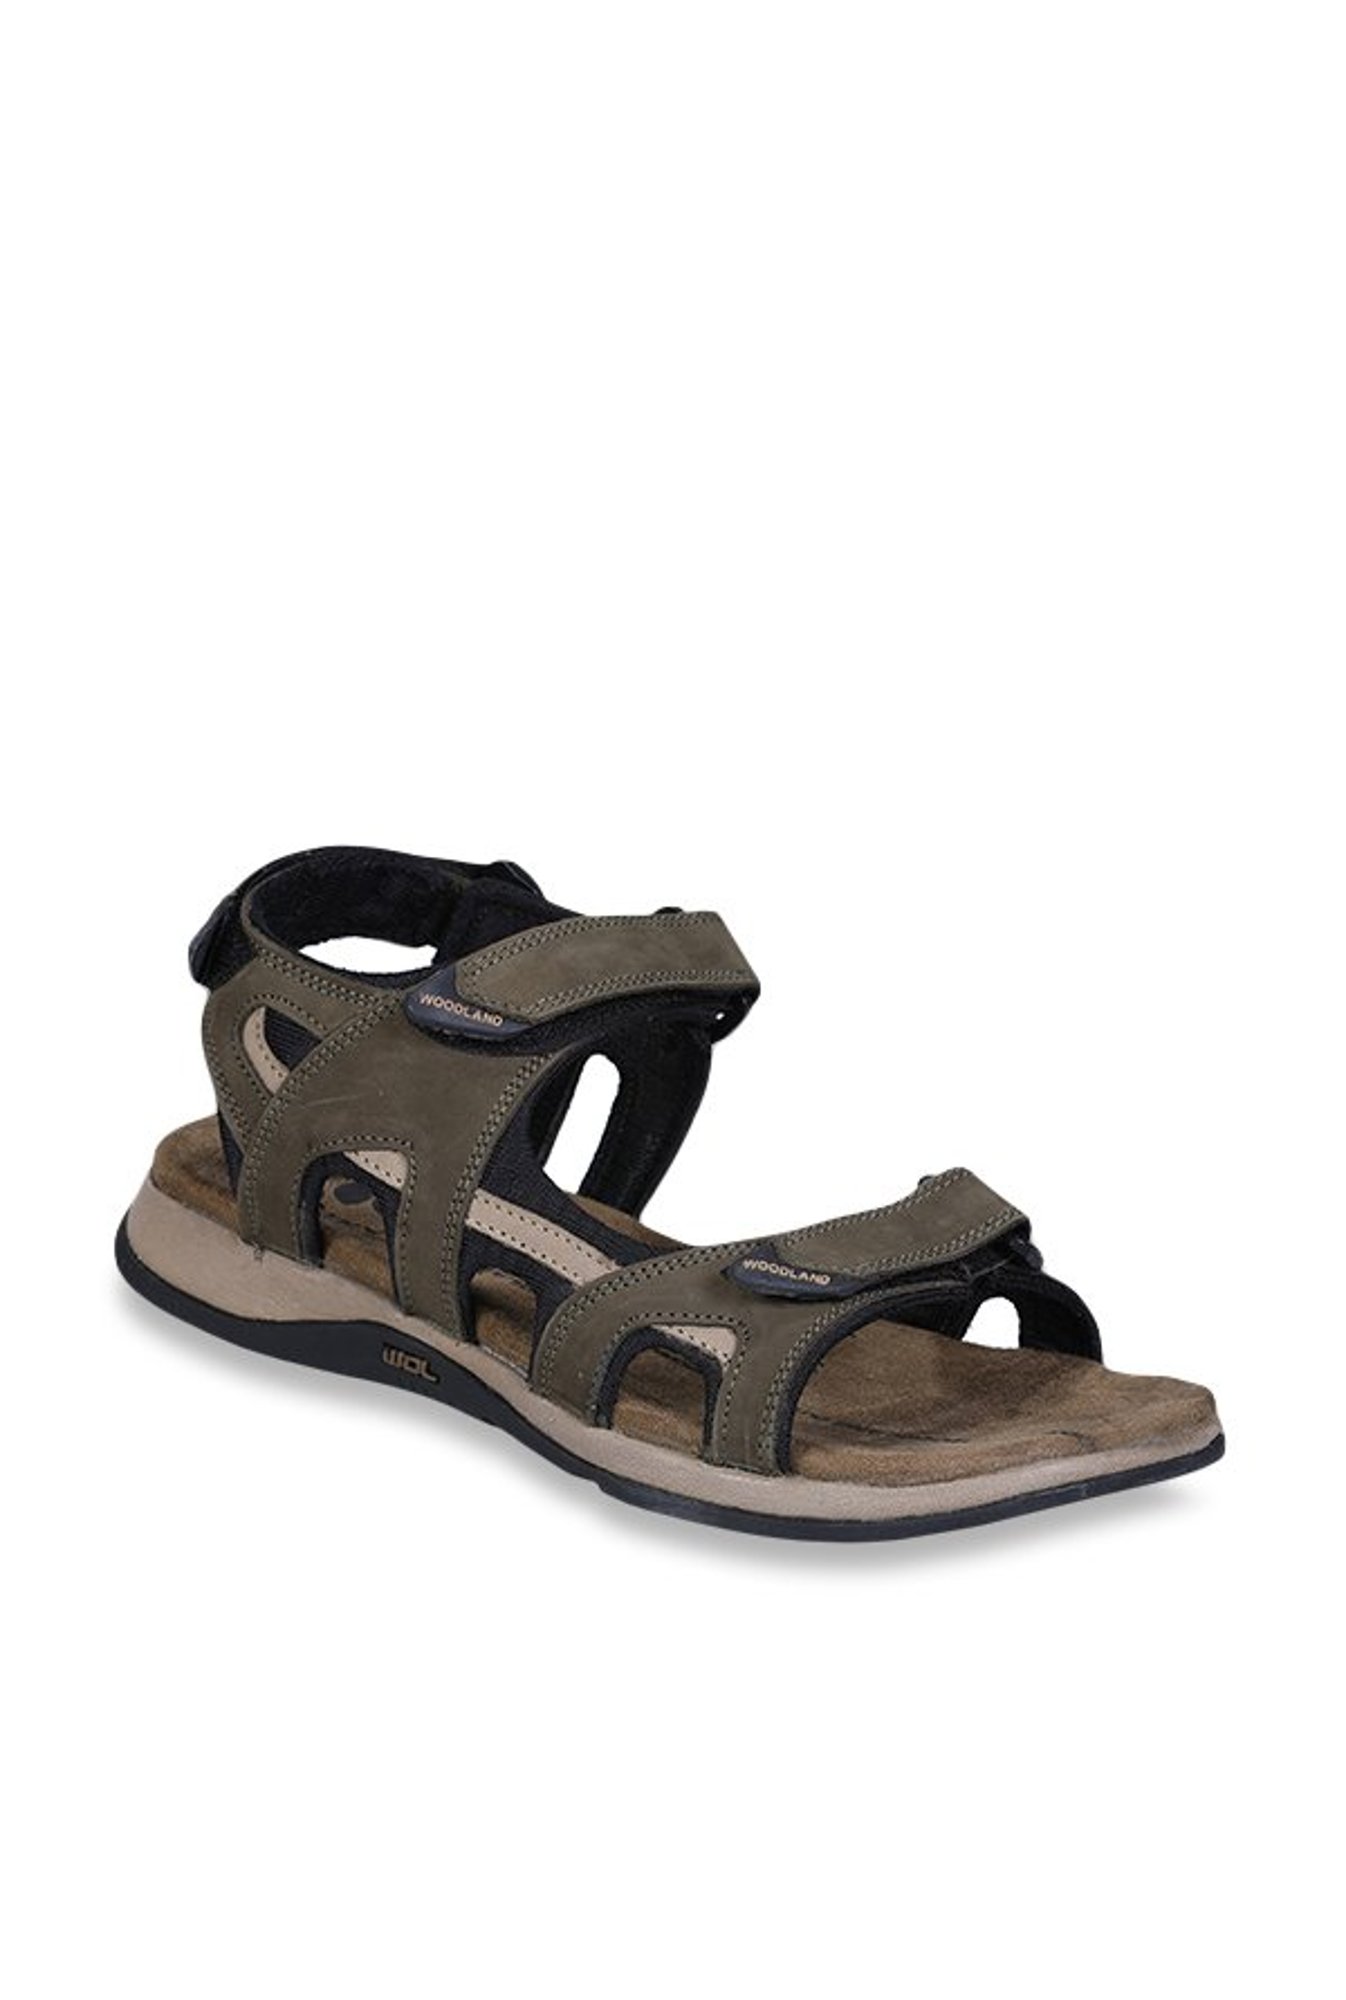 Buy Woodland Olive Floater Sandals for 